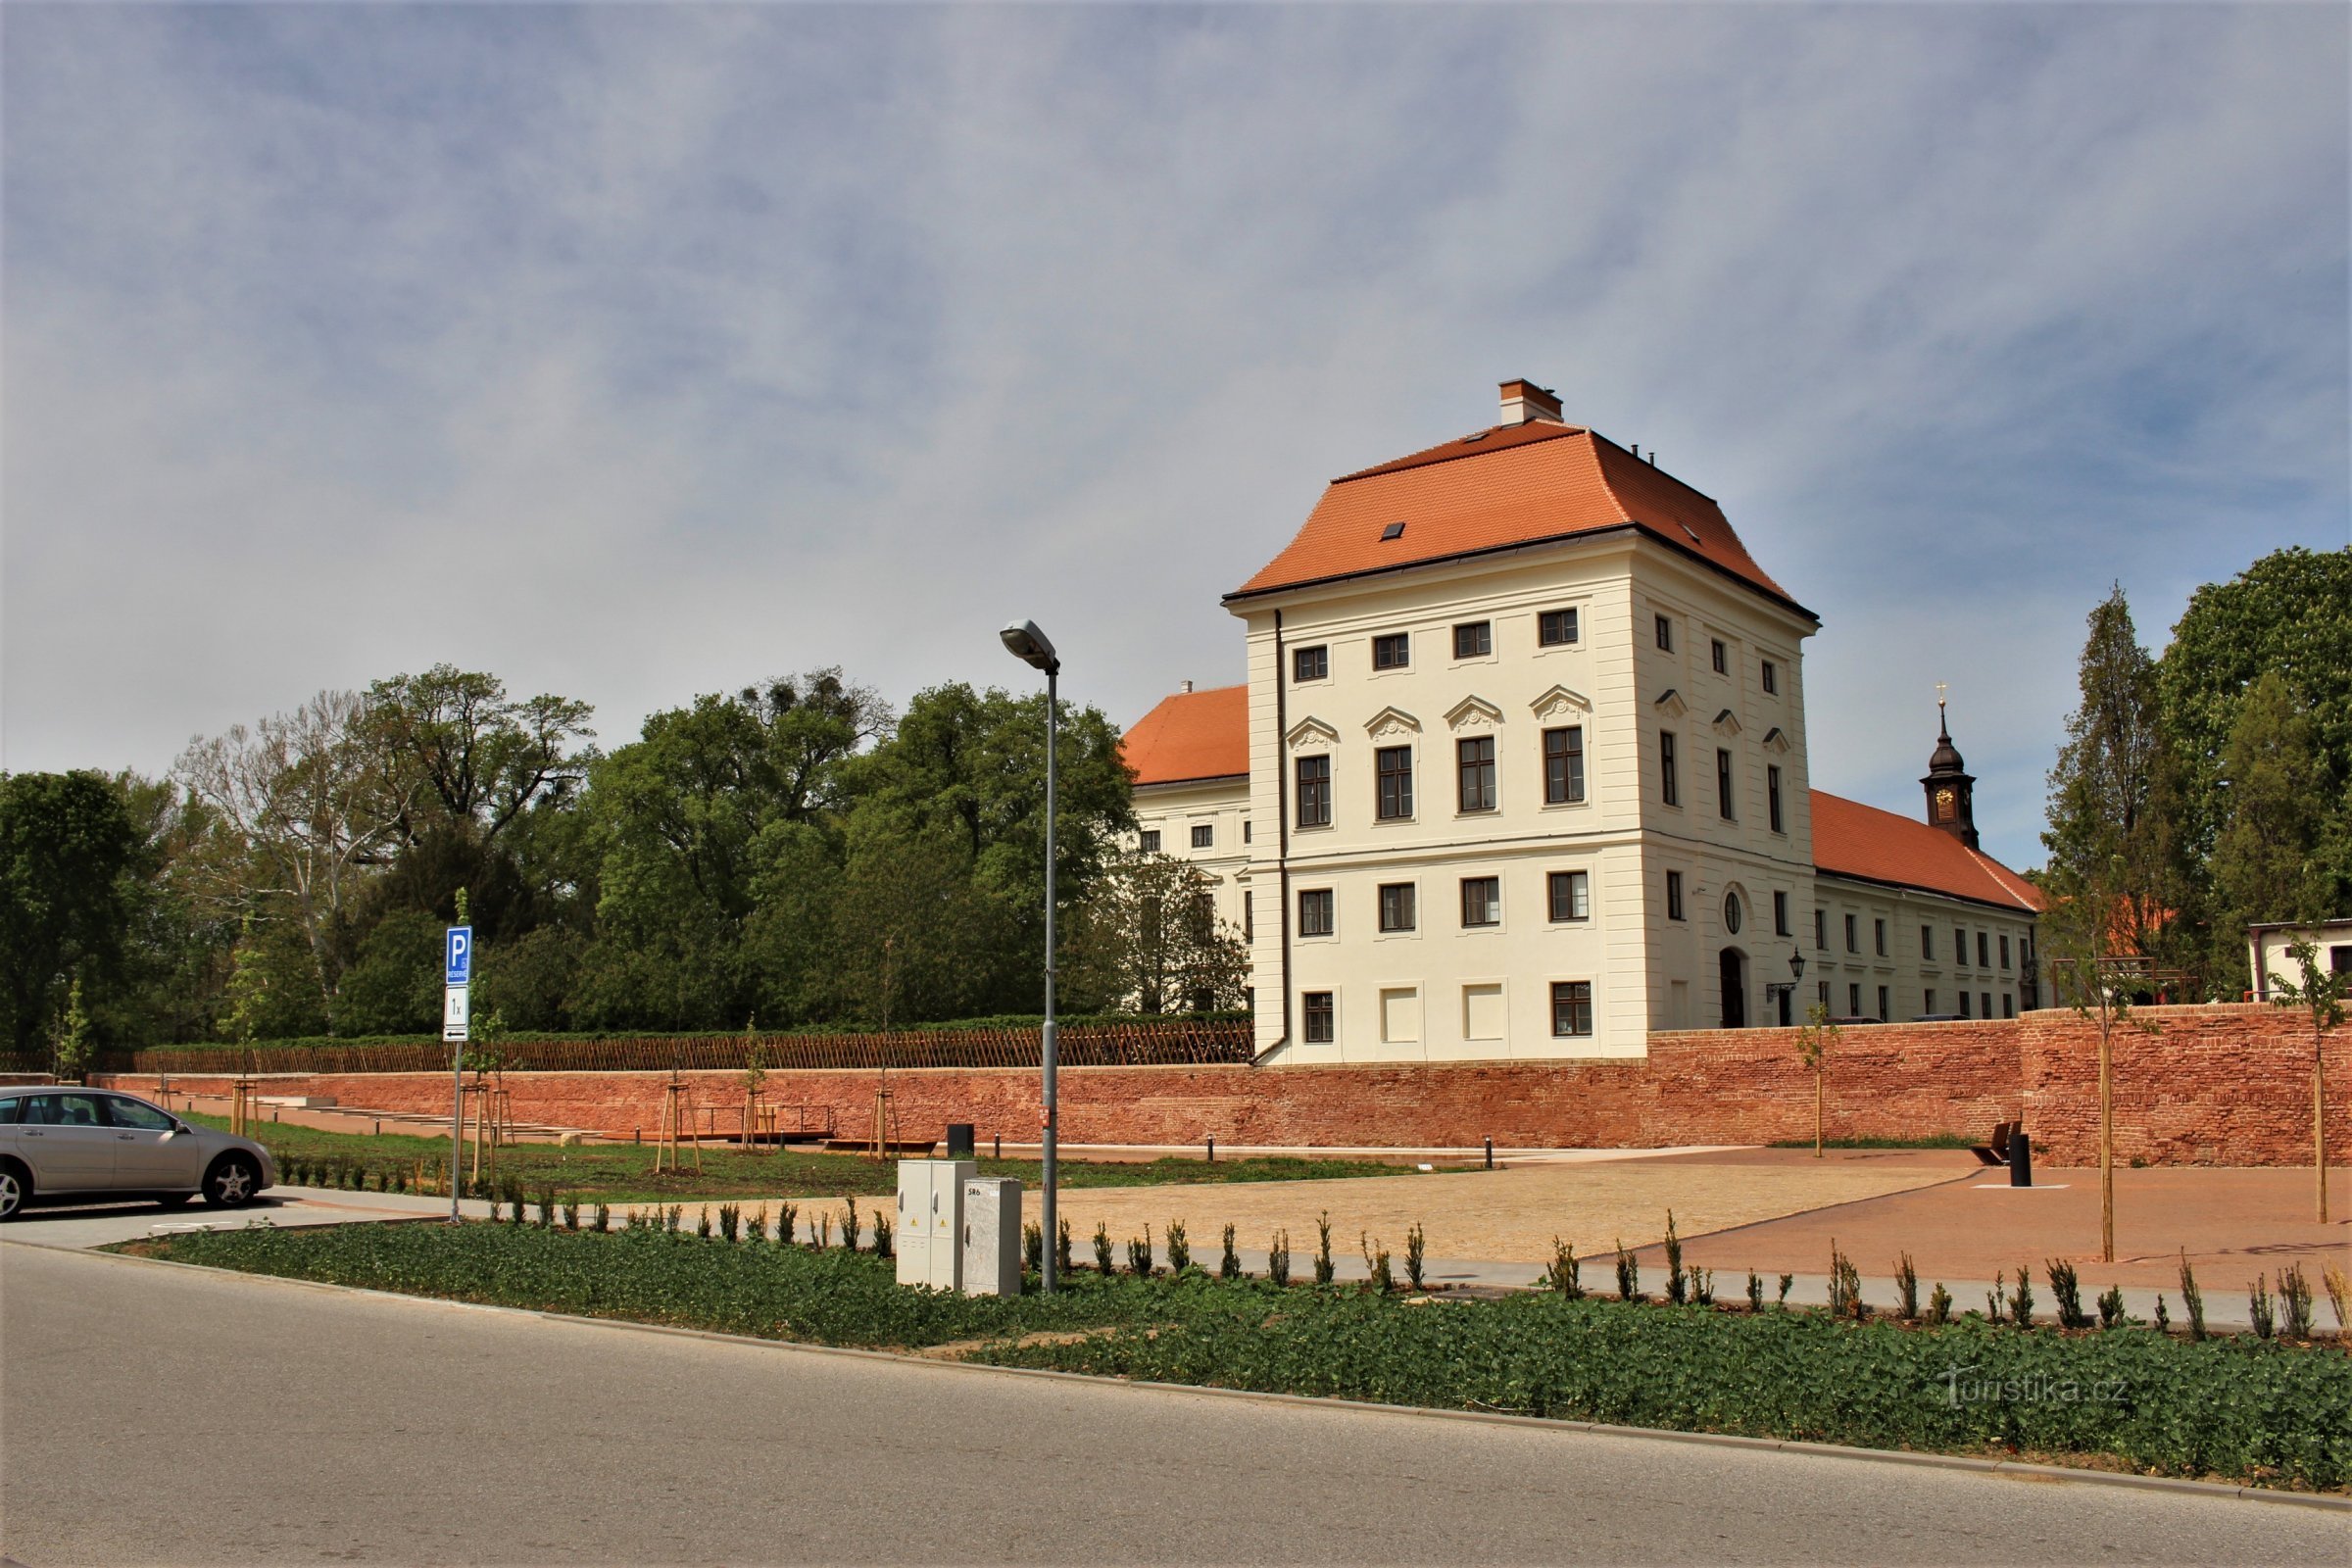 Vista geral do parque do castelo - maio de 2019